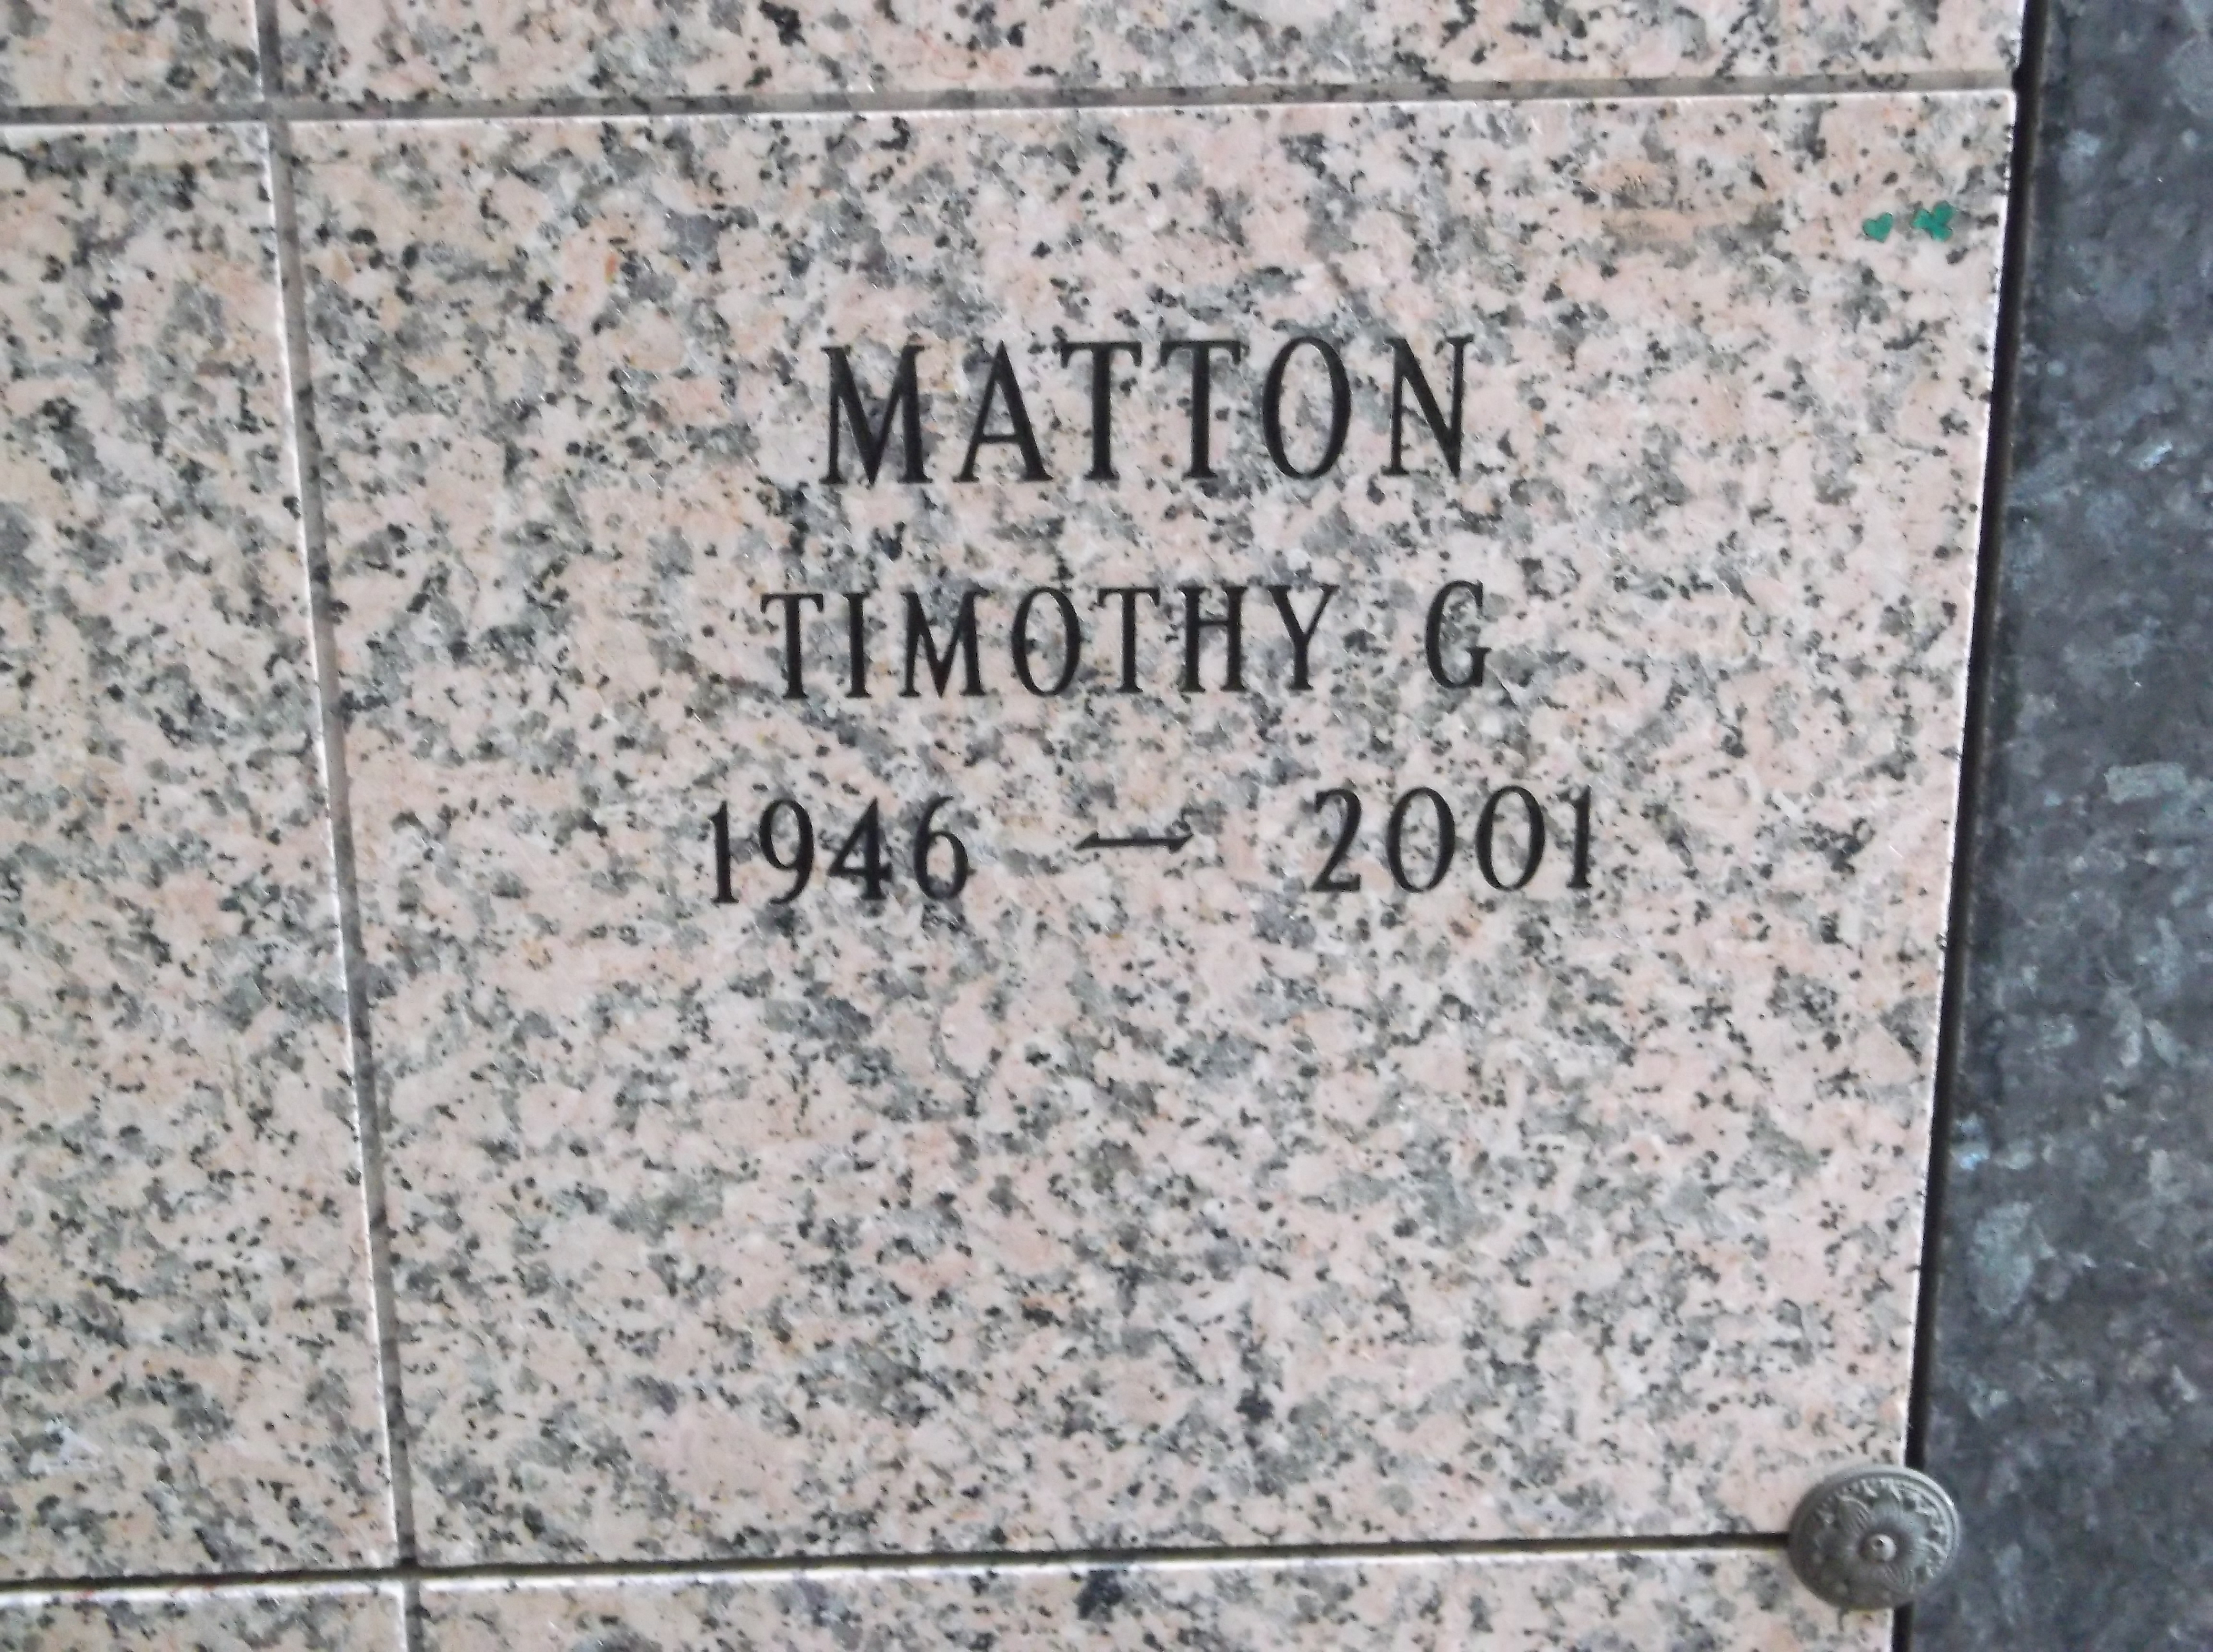 Timothy G Matton